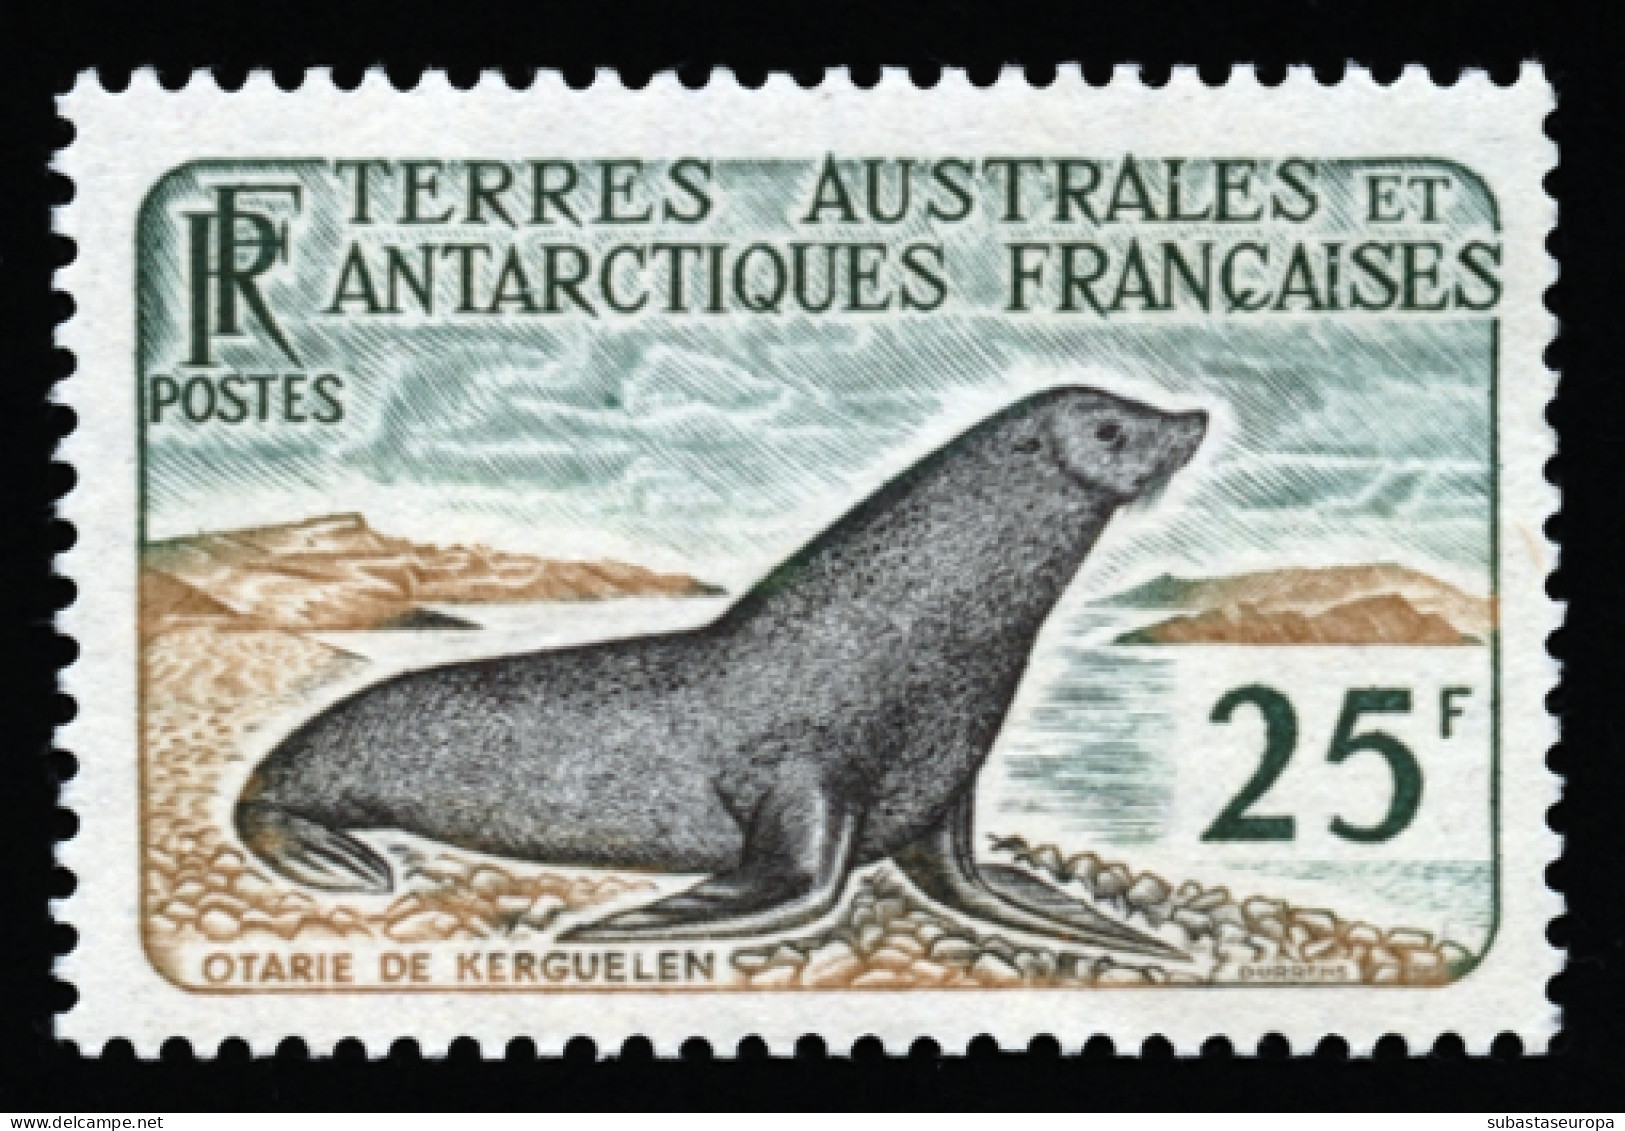 TAAF. ** 16. Foca. Cat. 142 €. - Unused Stamps